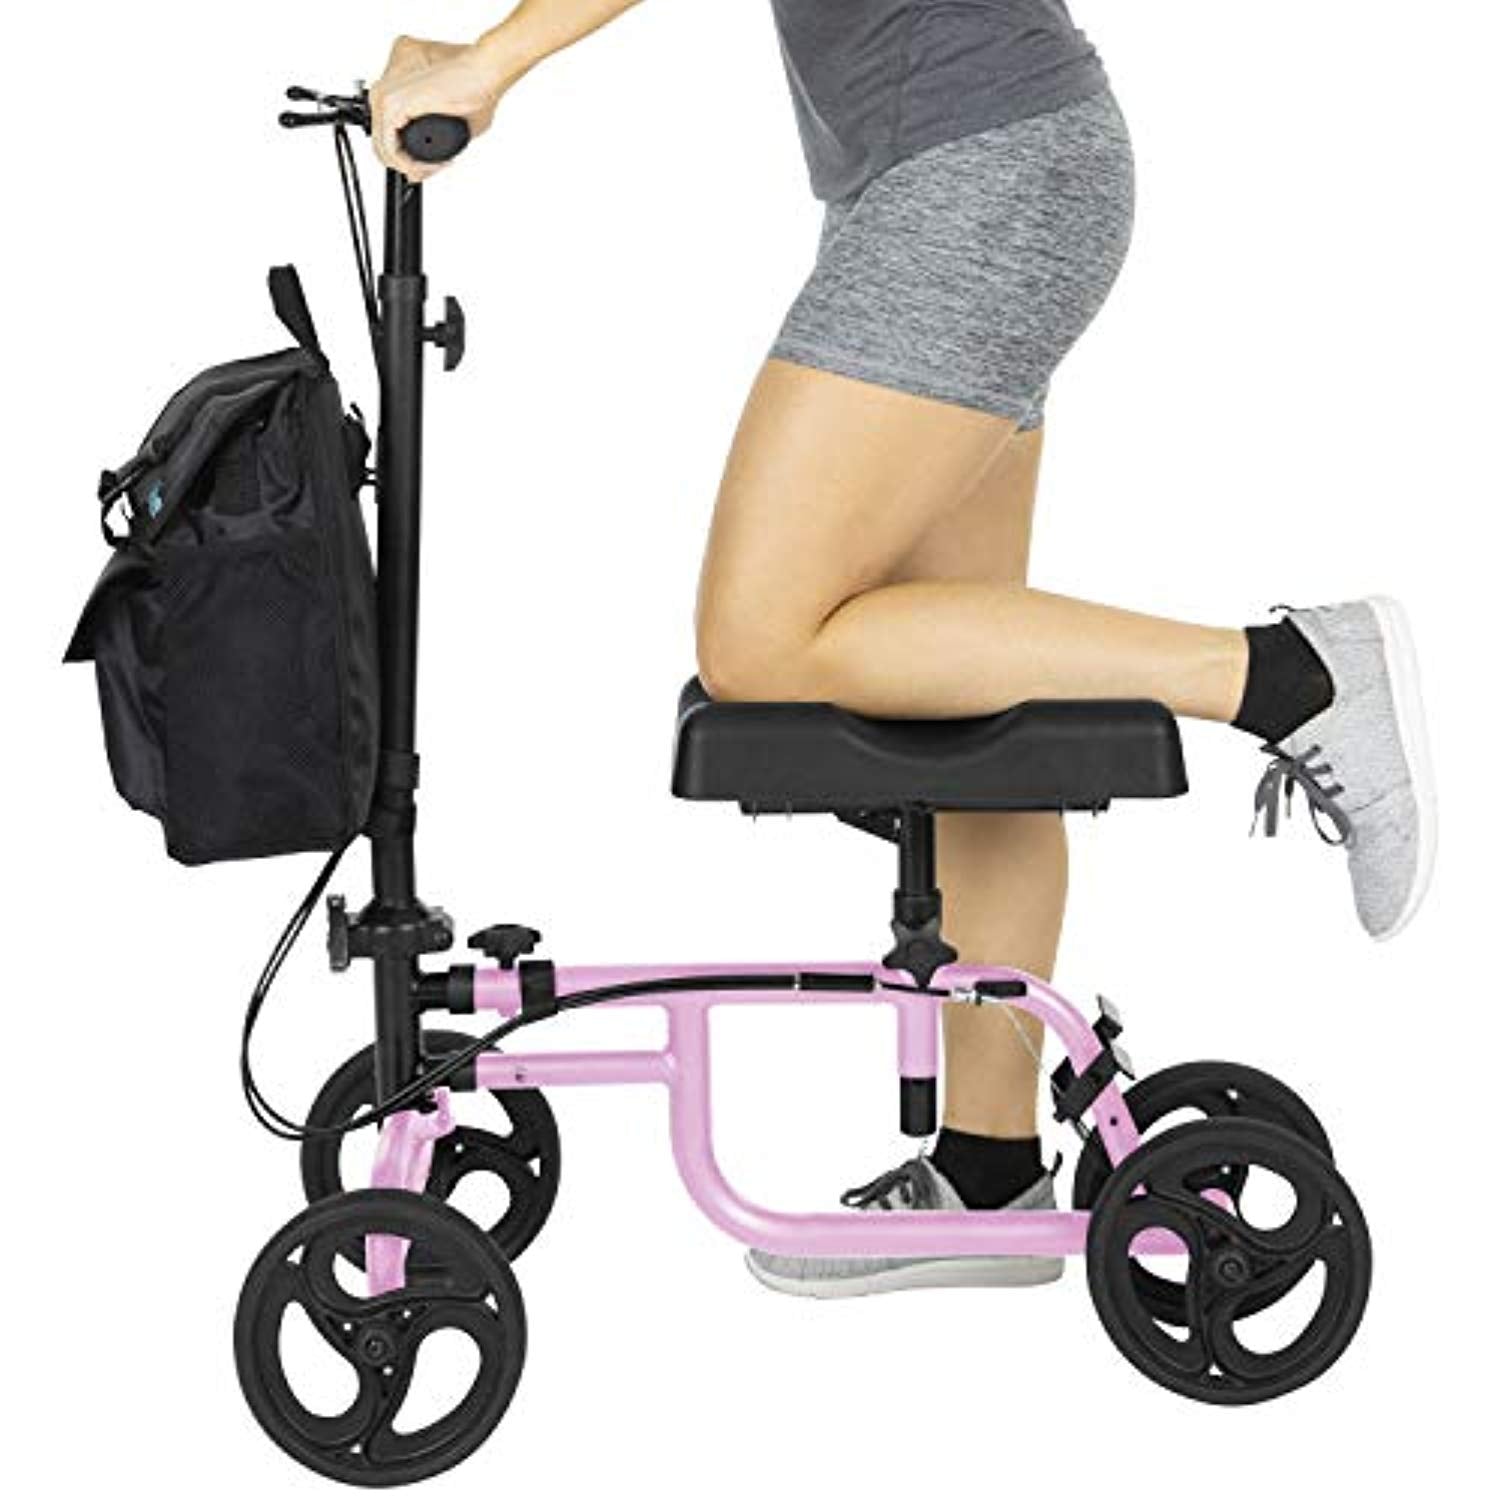 Knee Walker - Steerable - Scooter For Ankle Injuries Broken Leg, Foot